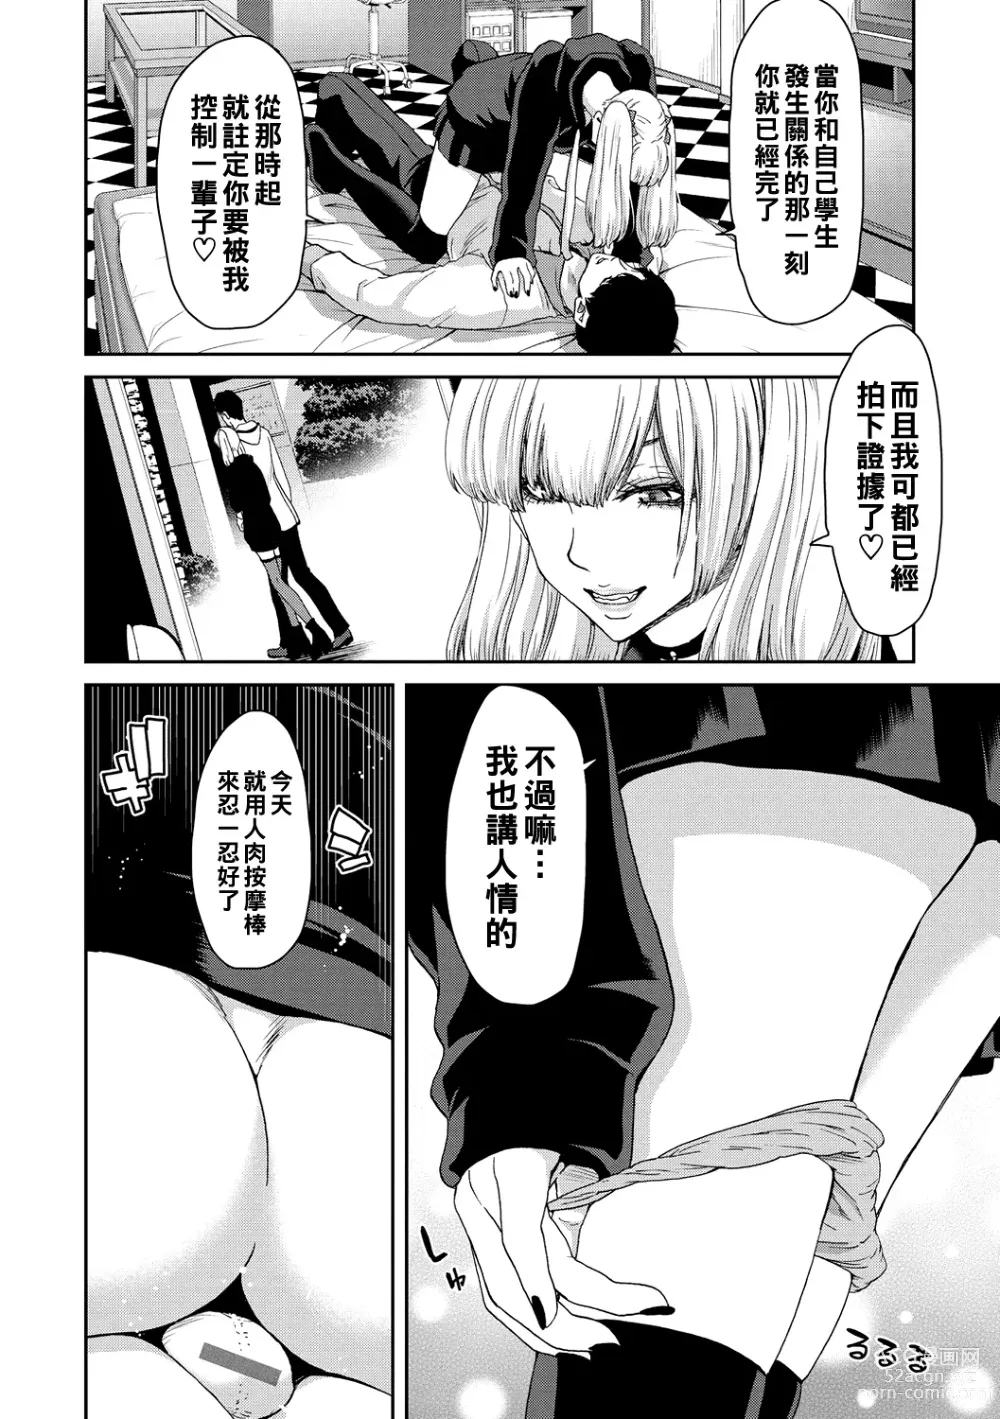 Page 14 of manga Shiyokka Hametsu SEX